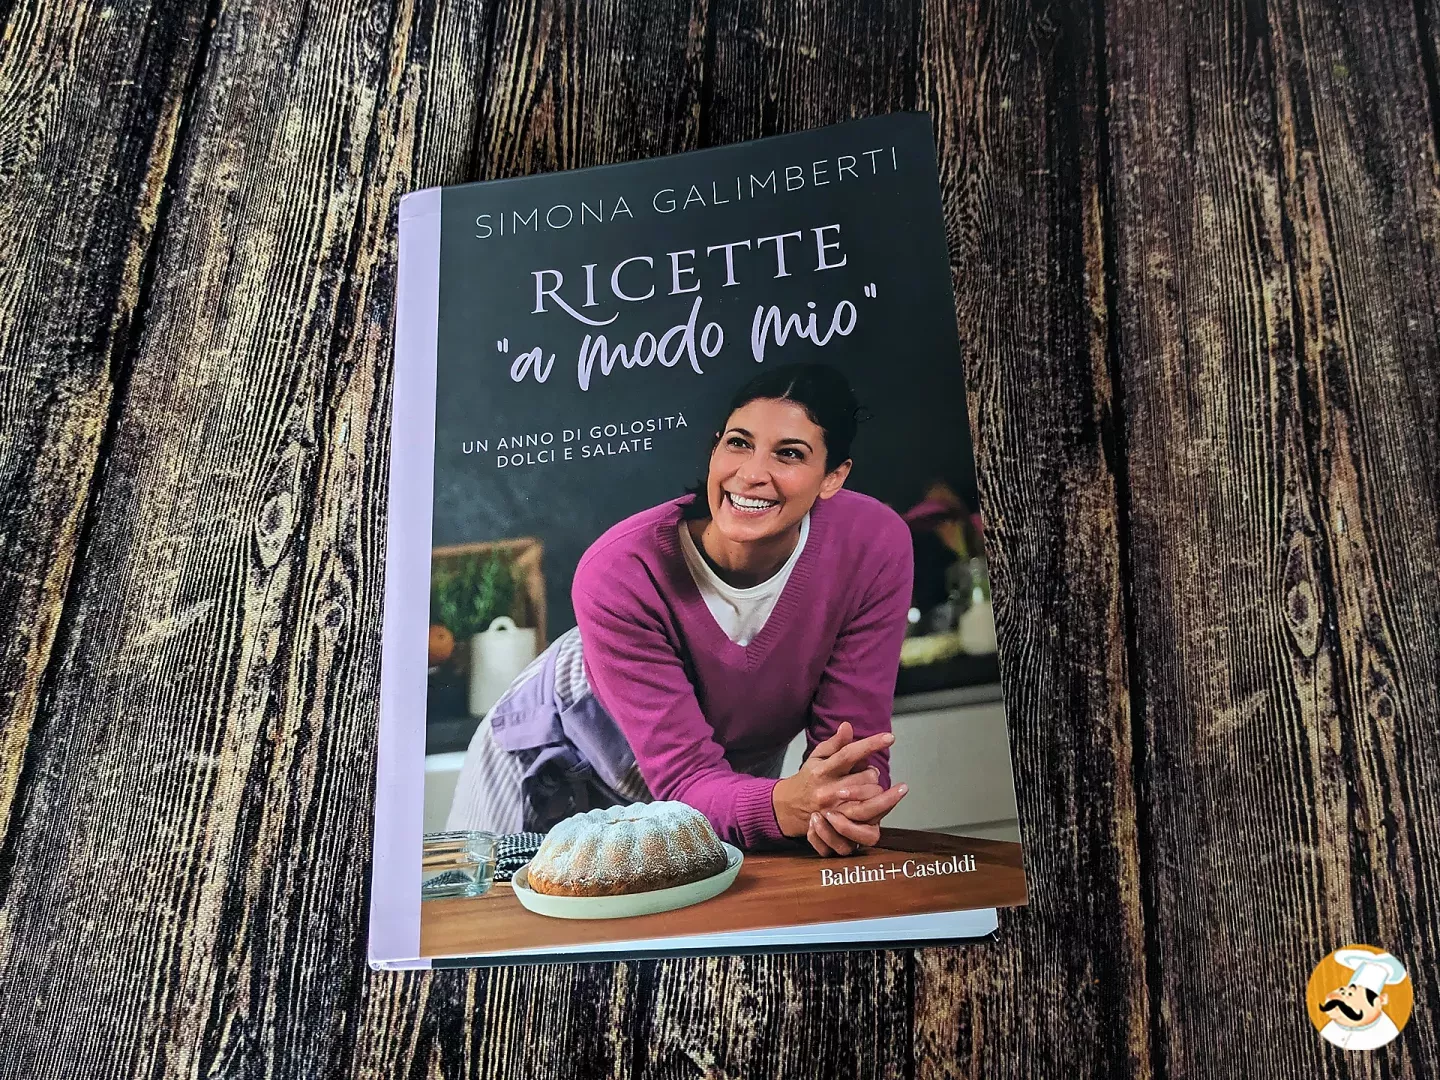 Ricette a modo mio il nuovo libro di Simona Galimberti per chi ama la cucina di stagione!